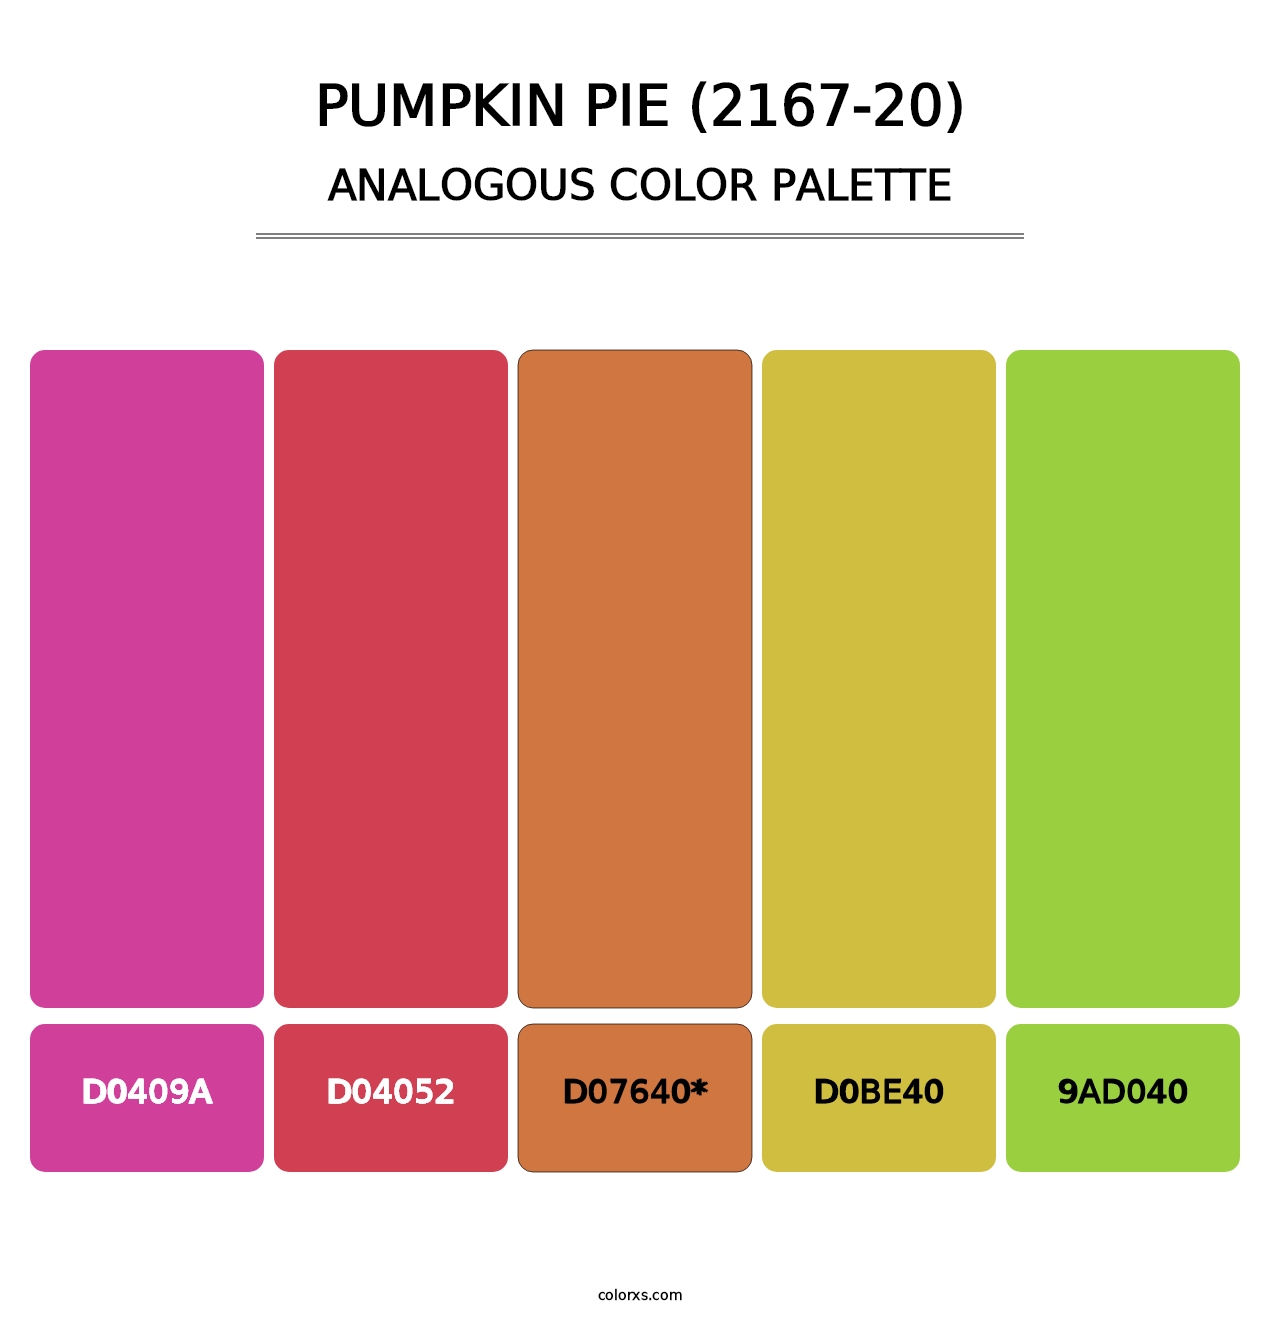 Pumpkin Pie (2167-20) - Analogous Color Palette